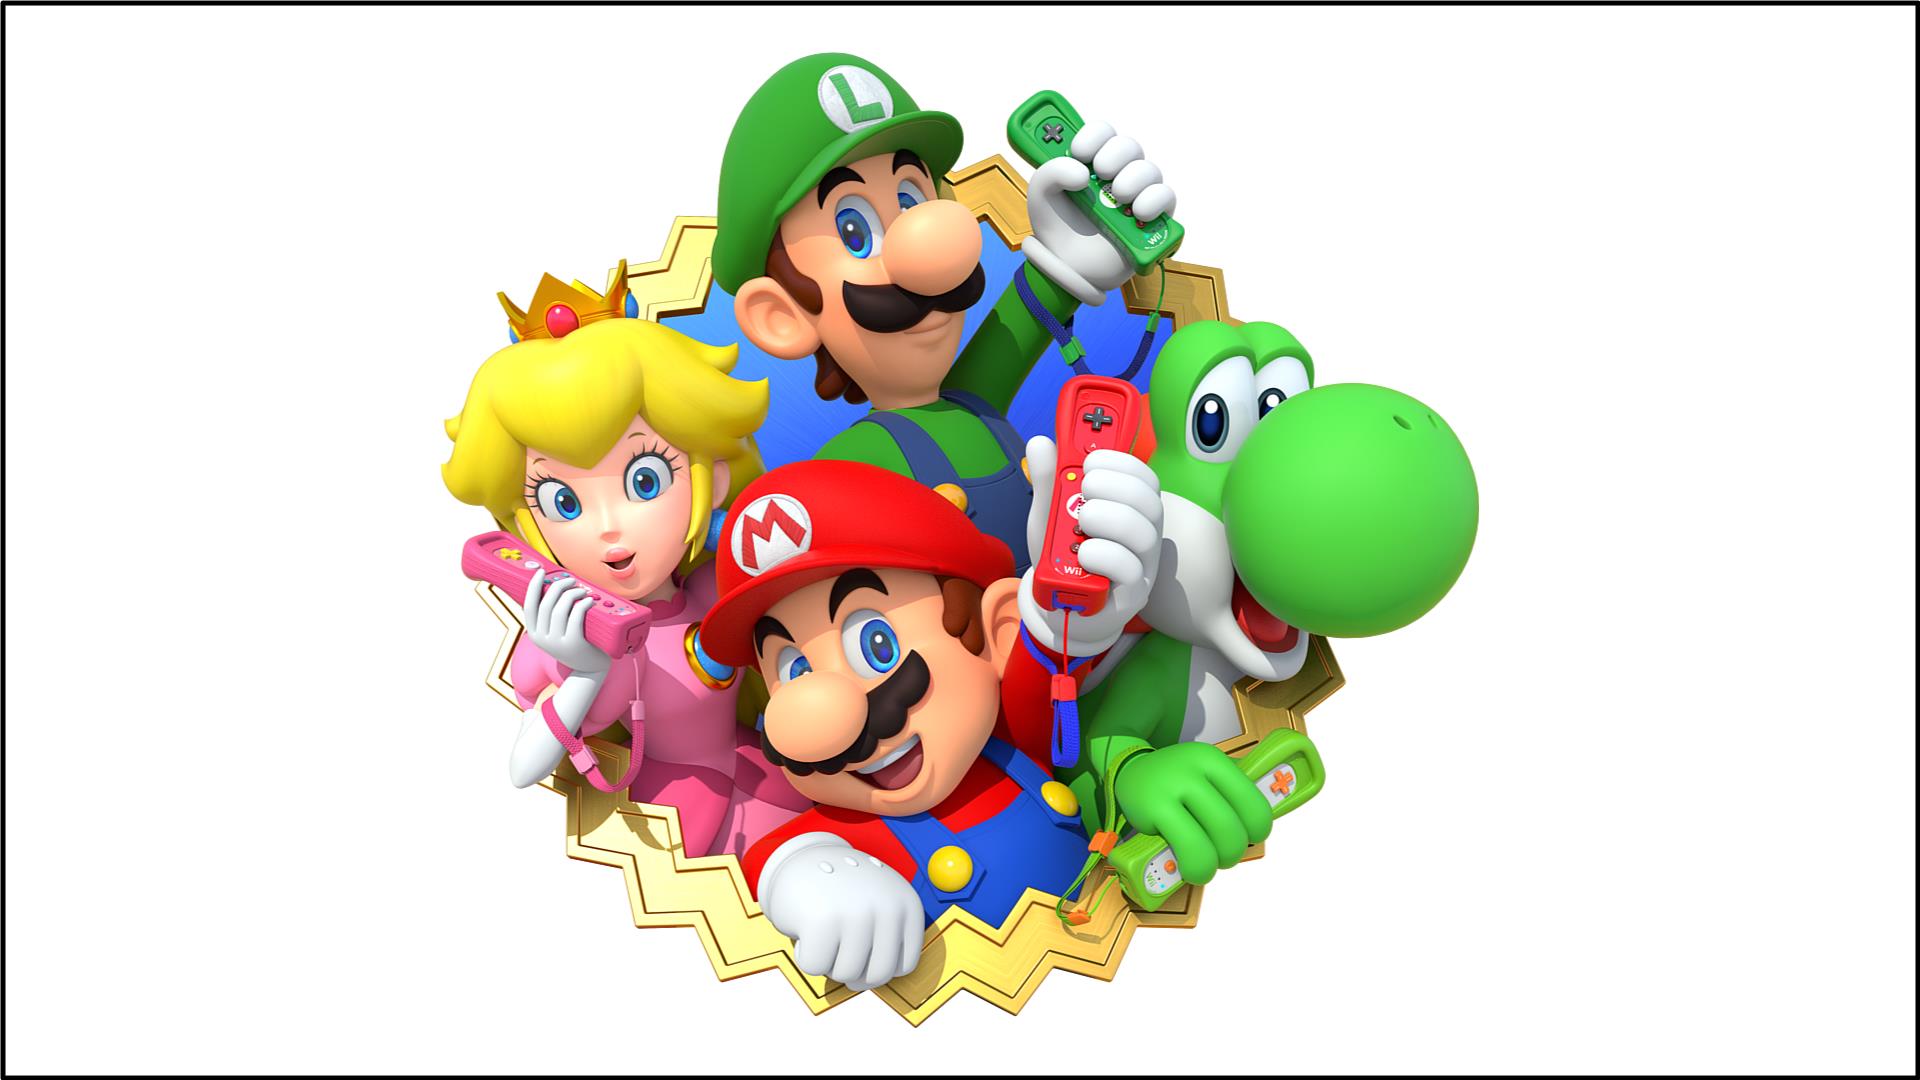 5 – Super Mario Bros